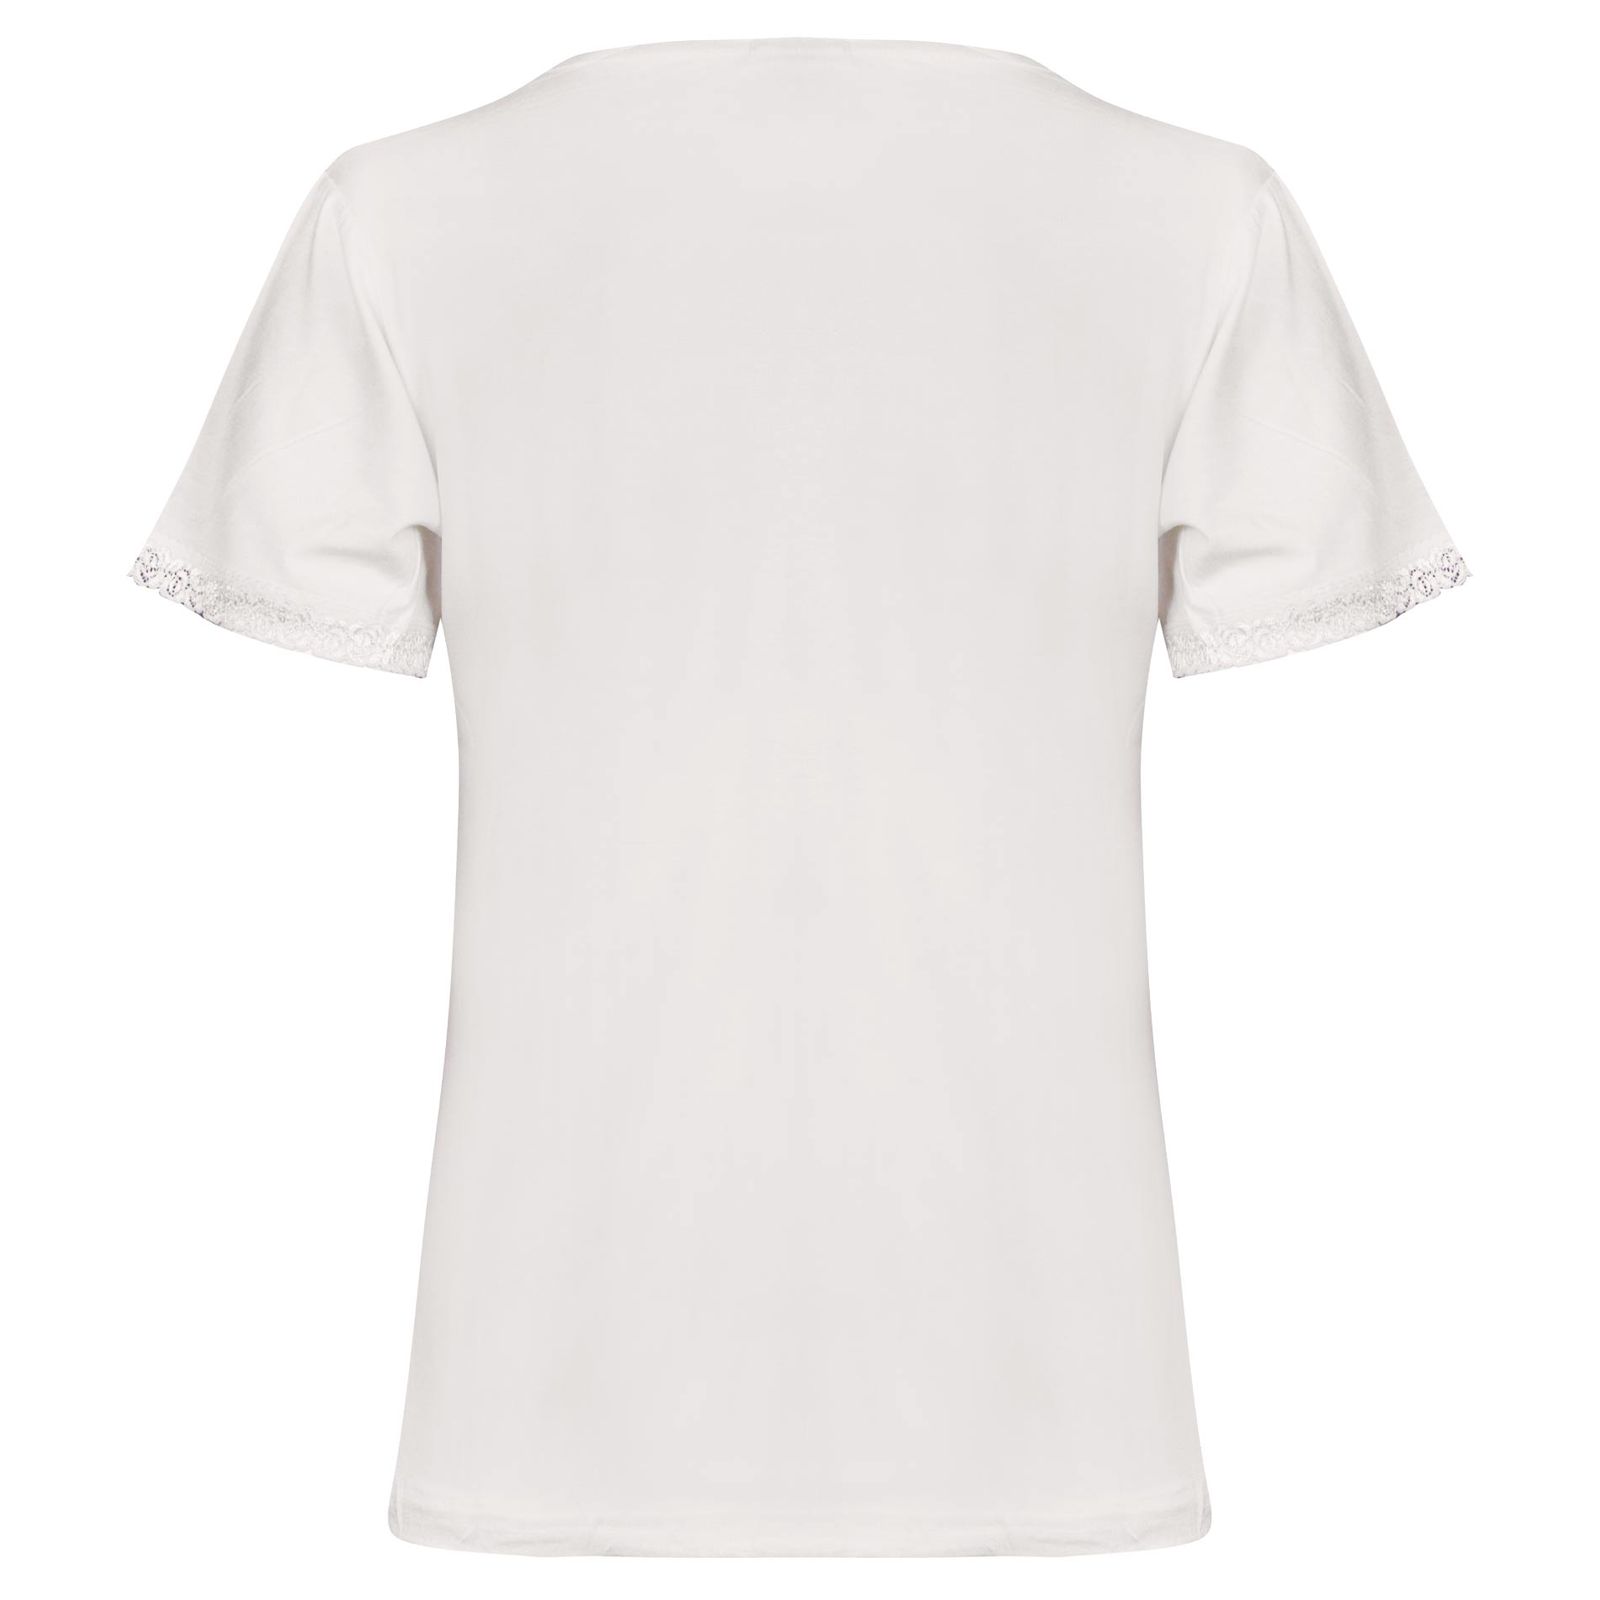 ست تی شرت آستین کوتاه و شلوارک زنانه کوزا مدل پنبه ای کد 9201-5 -  - 3